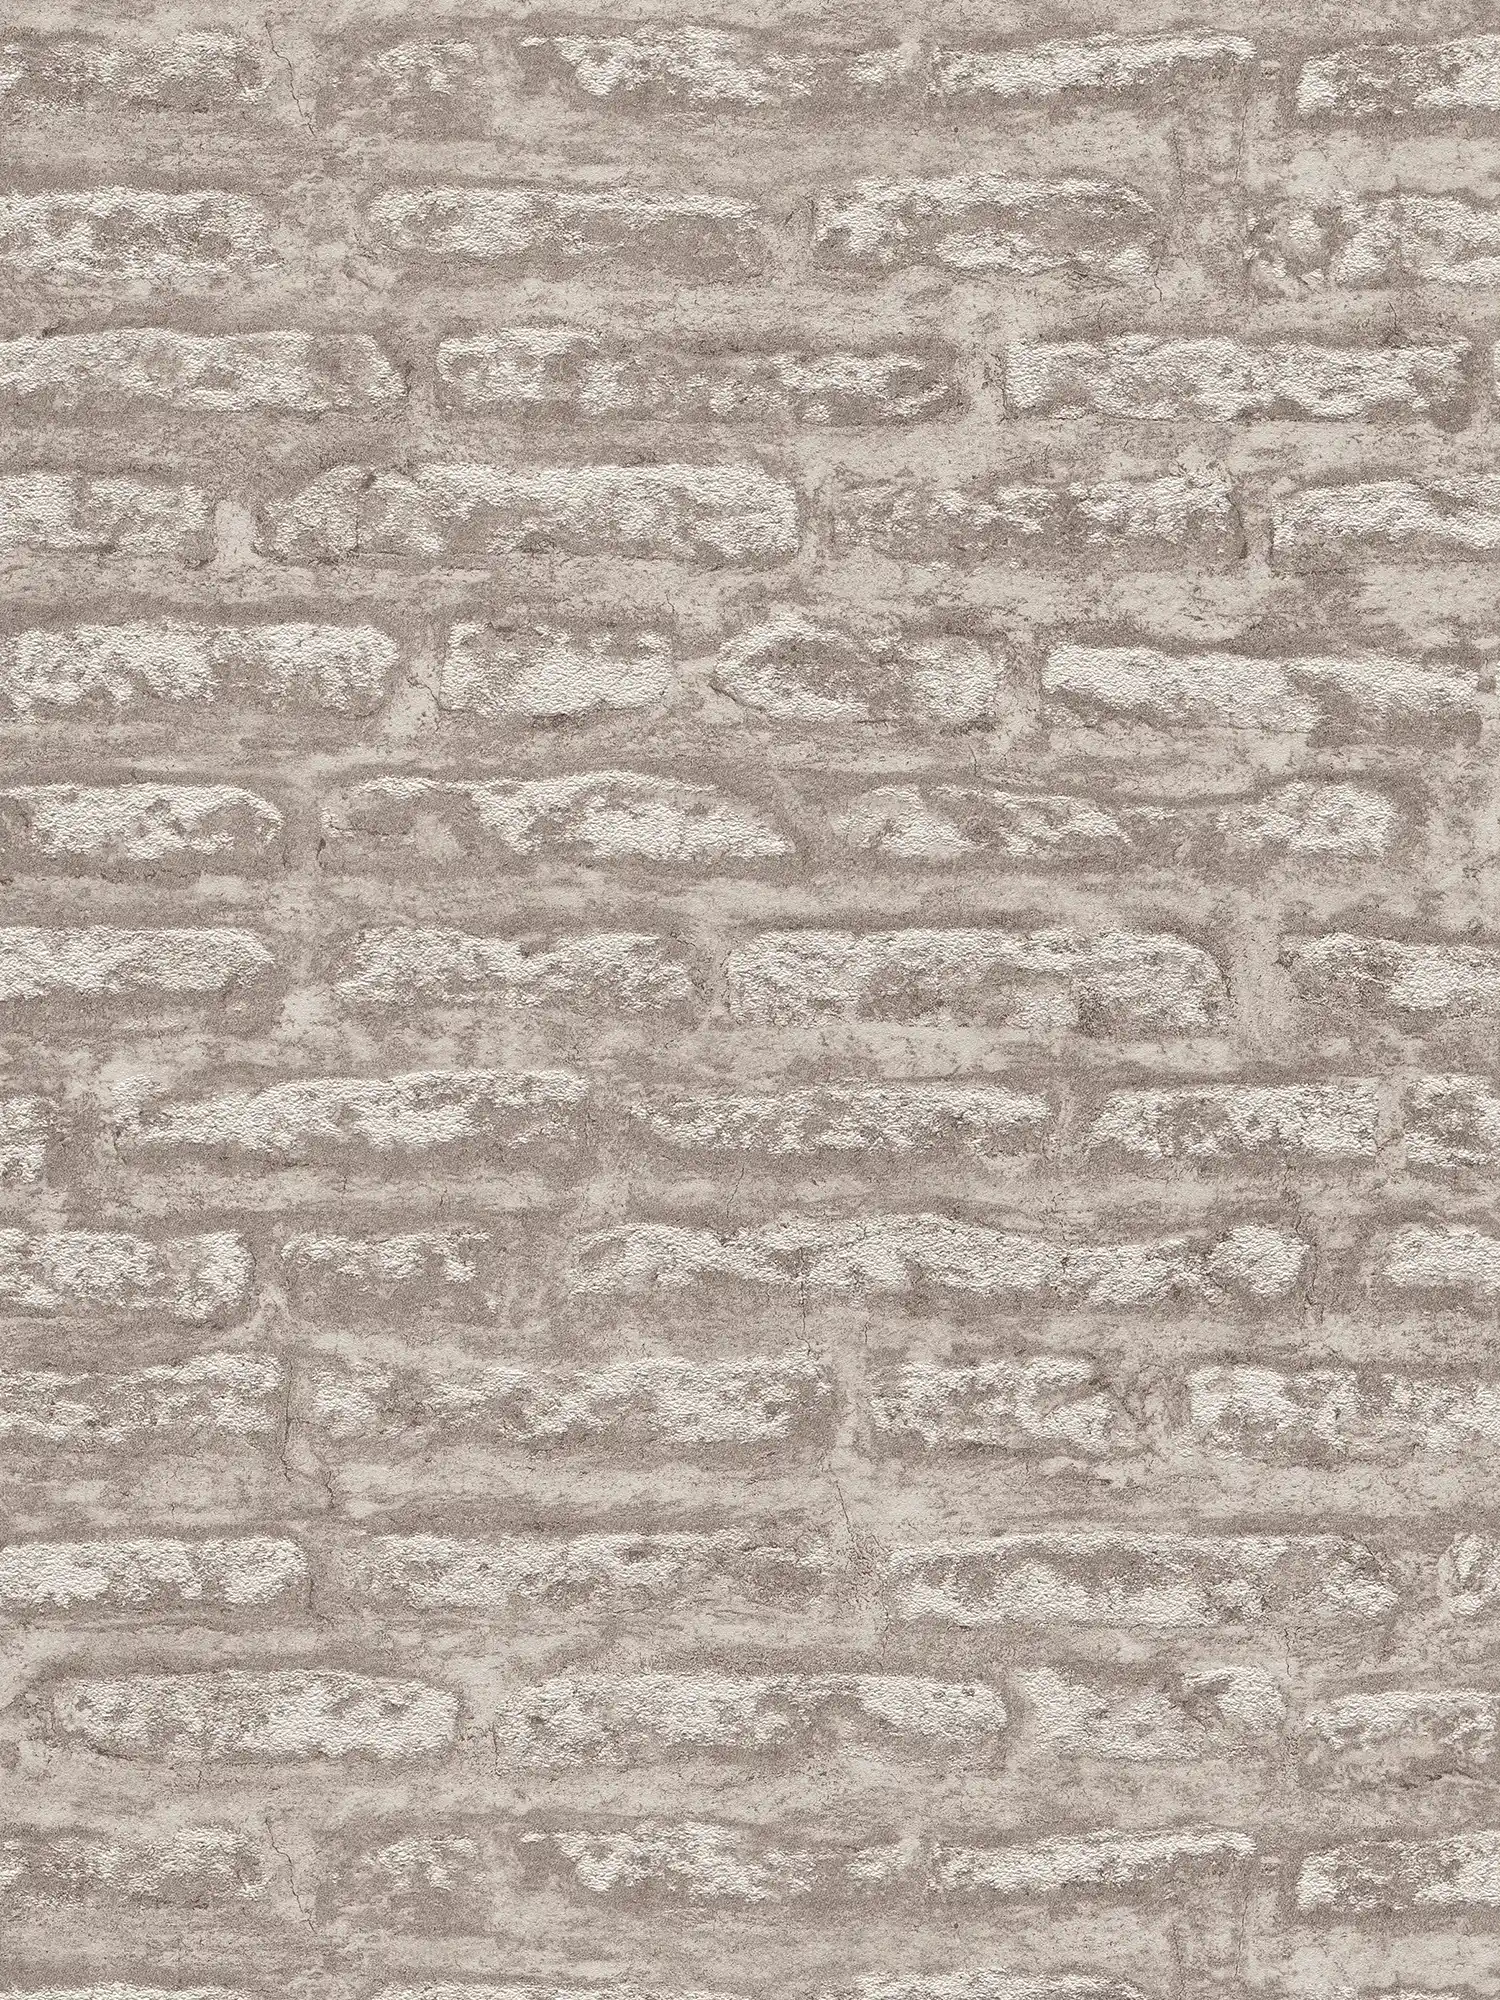 Gedessineerd behang in matte gipslook - grijs, bruin, wit
